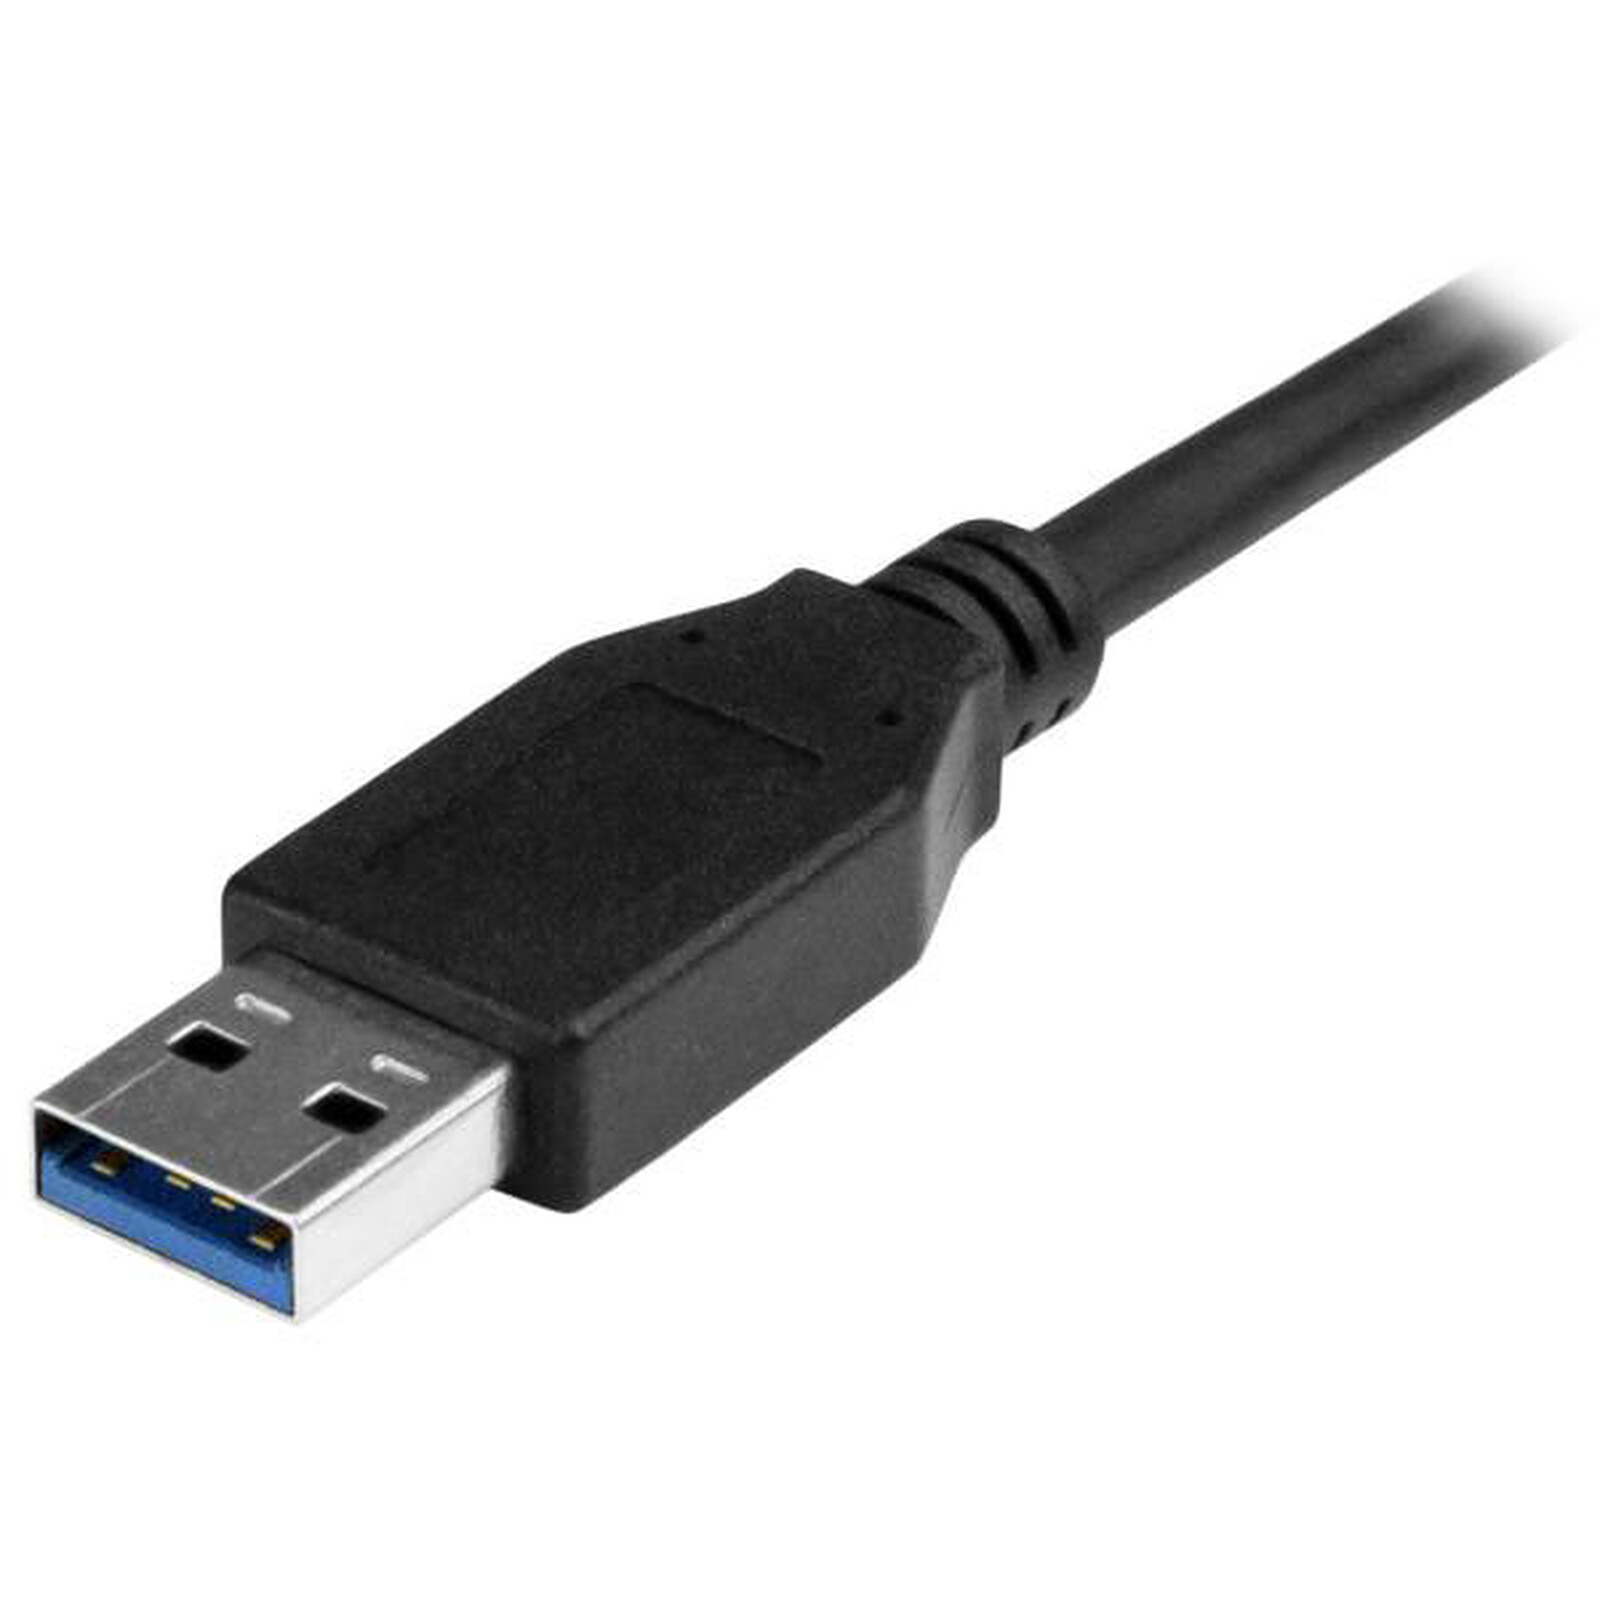 Usb v 2.0. USB 3.0, USB 3.1 gen1. USB 3.0 A (M) - USB 3.0 B (F). USB 3.2 gen1 Type-a - USB 3.2 gen1 Type-b угловой. Удлинитель USB 2.0 USB-c5-LC.